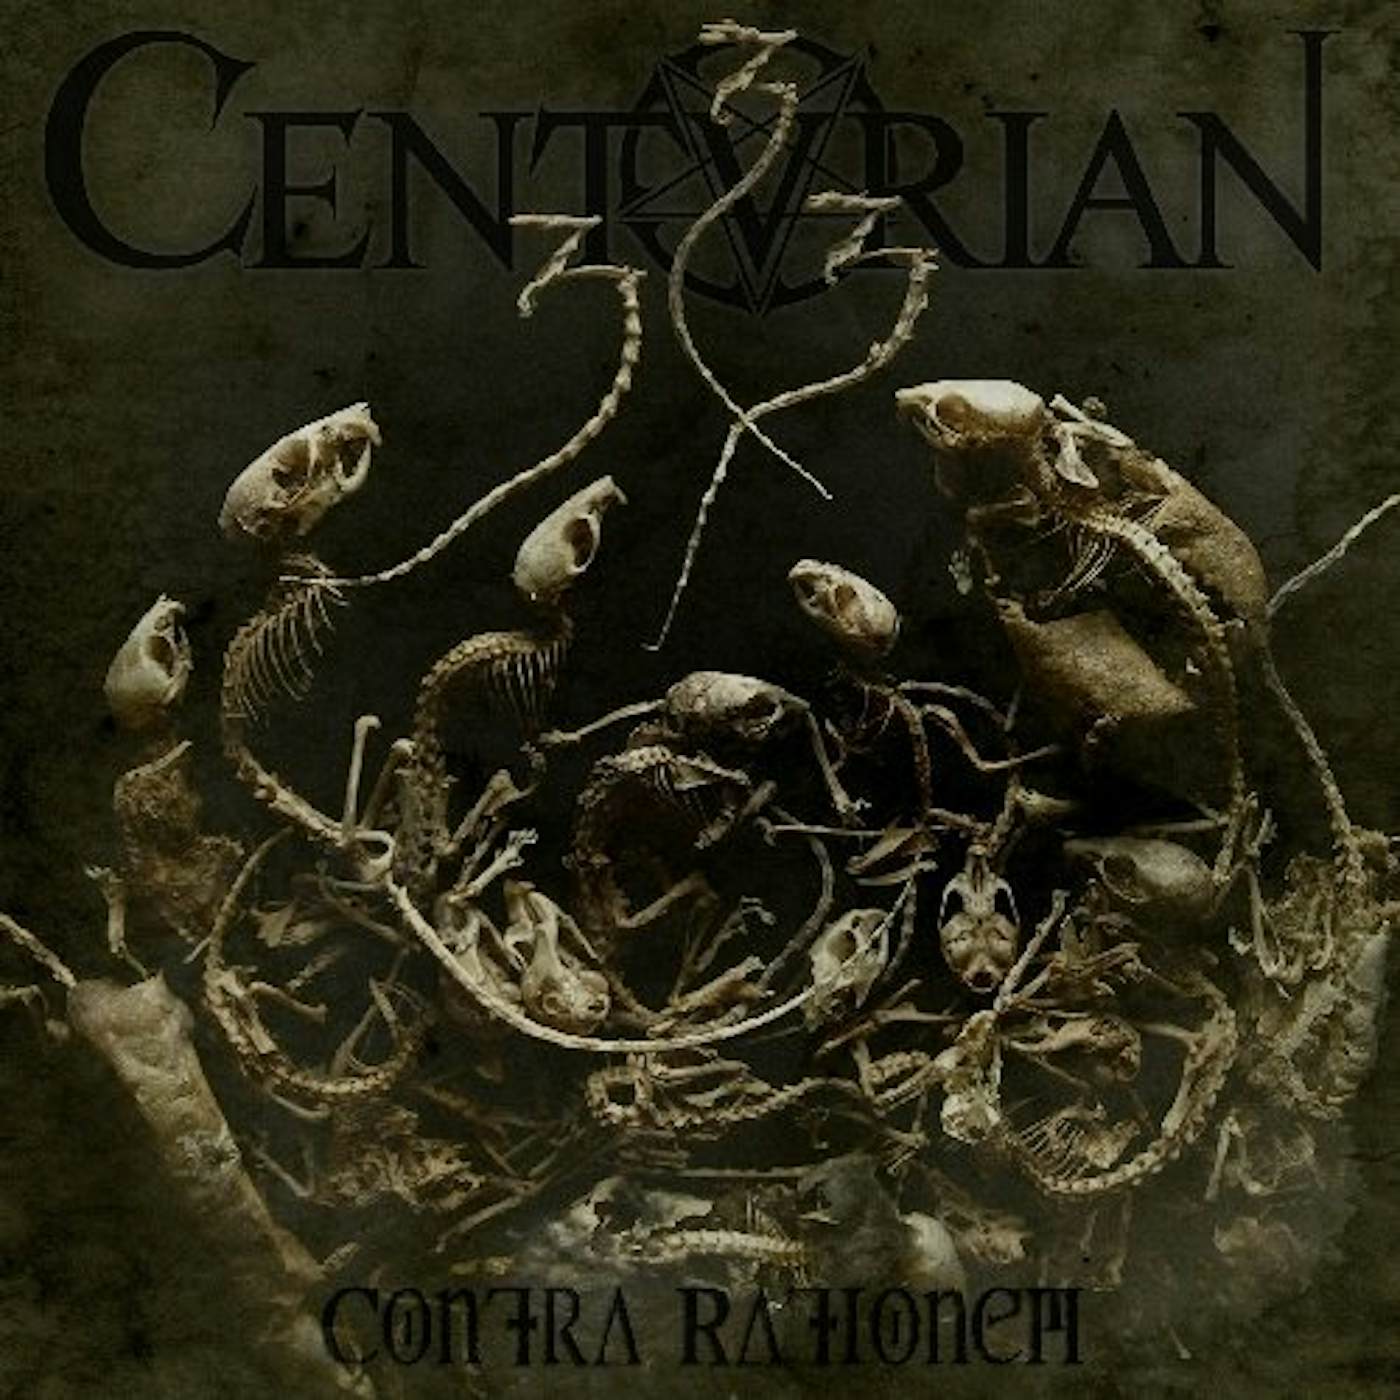 Centurian Contra Rationem Vinyl Record